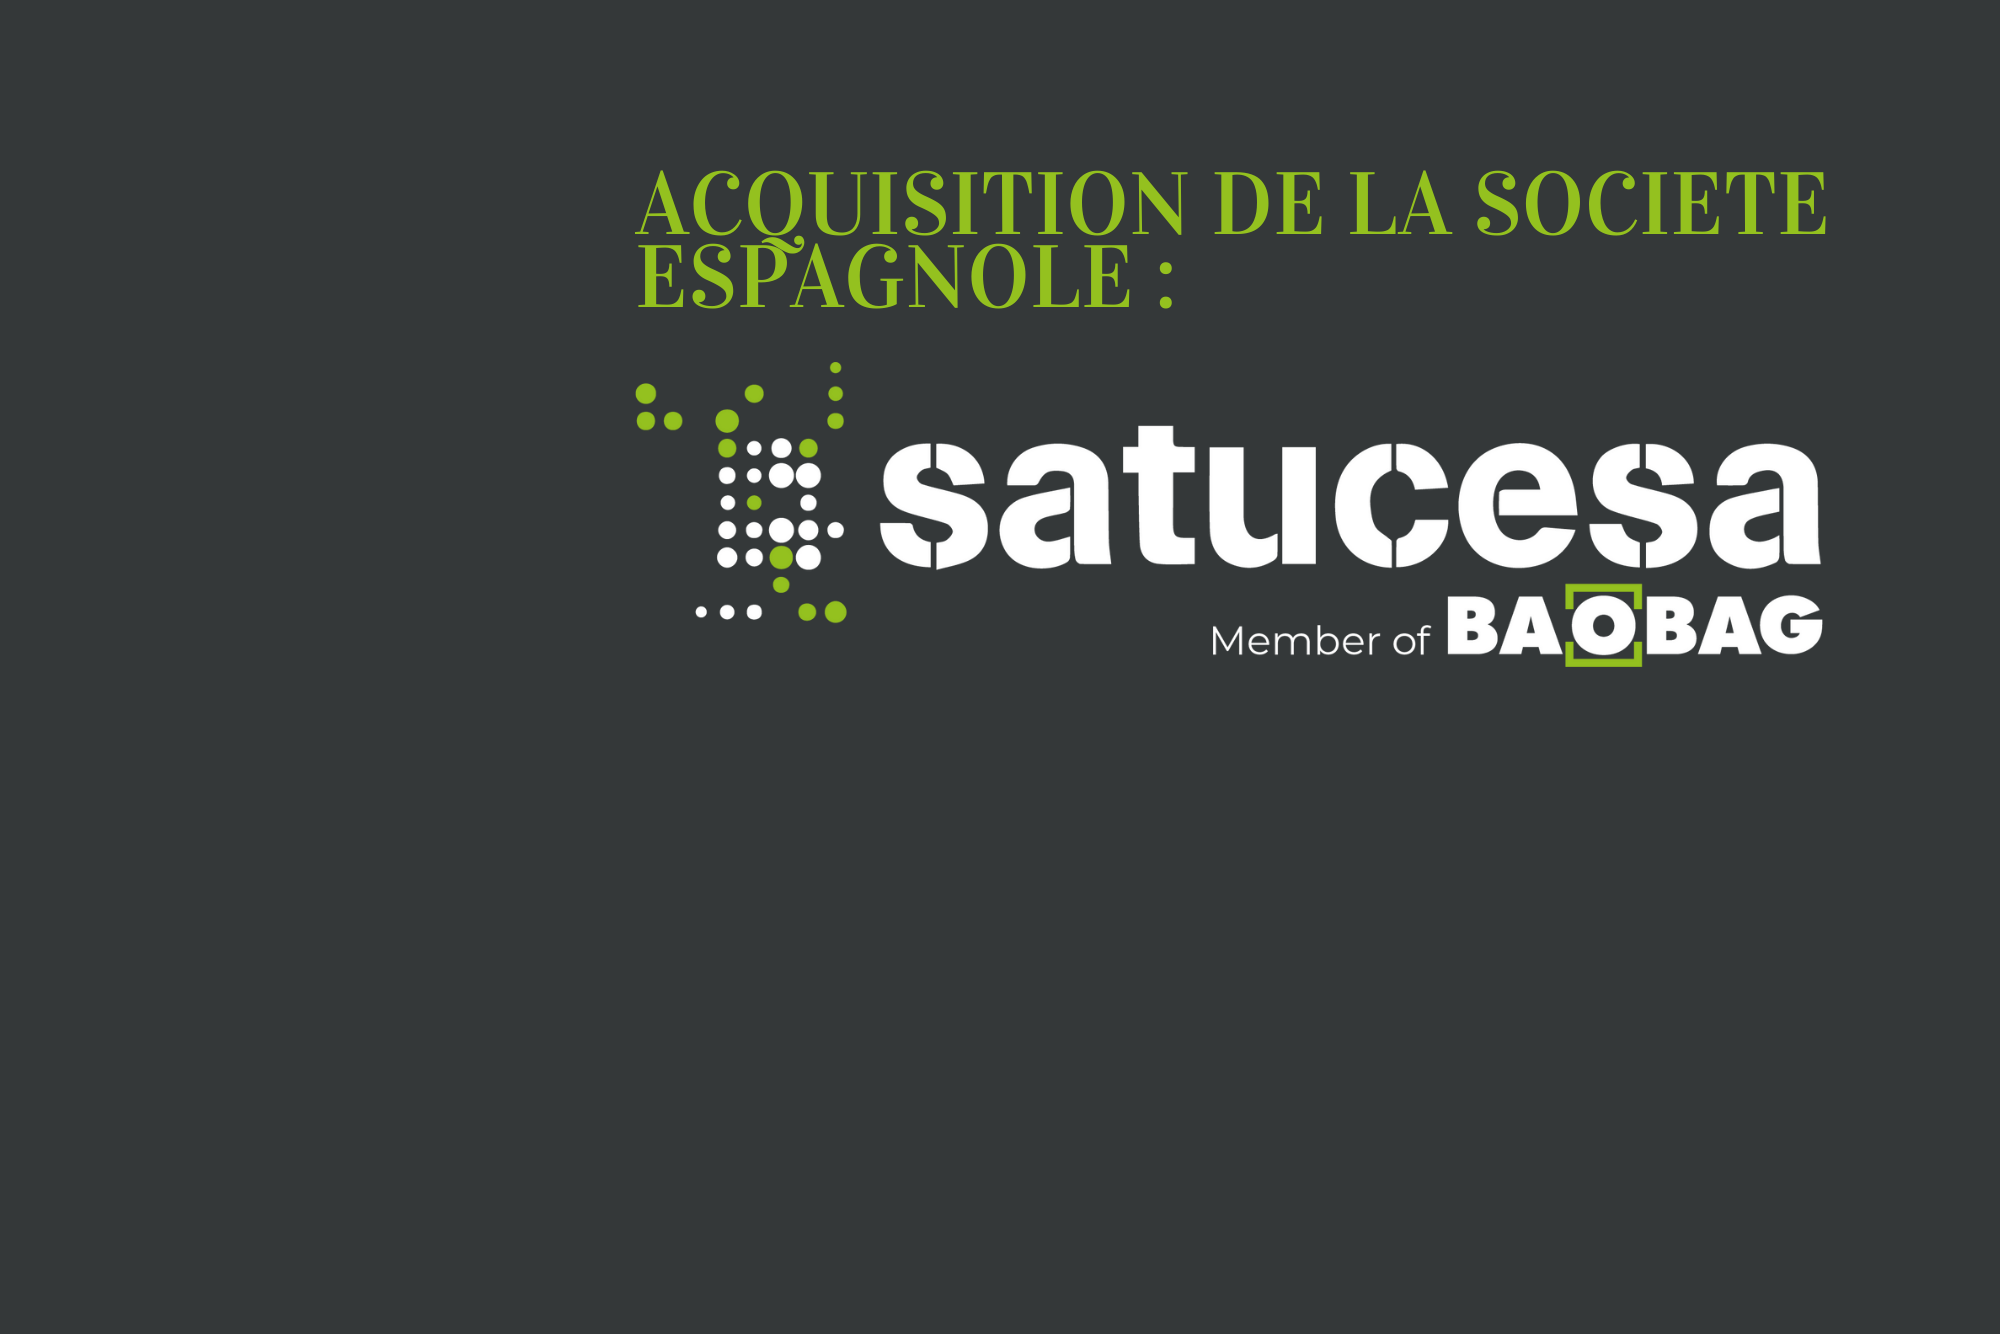 Translink CF accompagne Baobag dans le cadre de l’acquisition de la société espagnole Satucesa